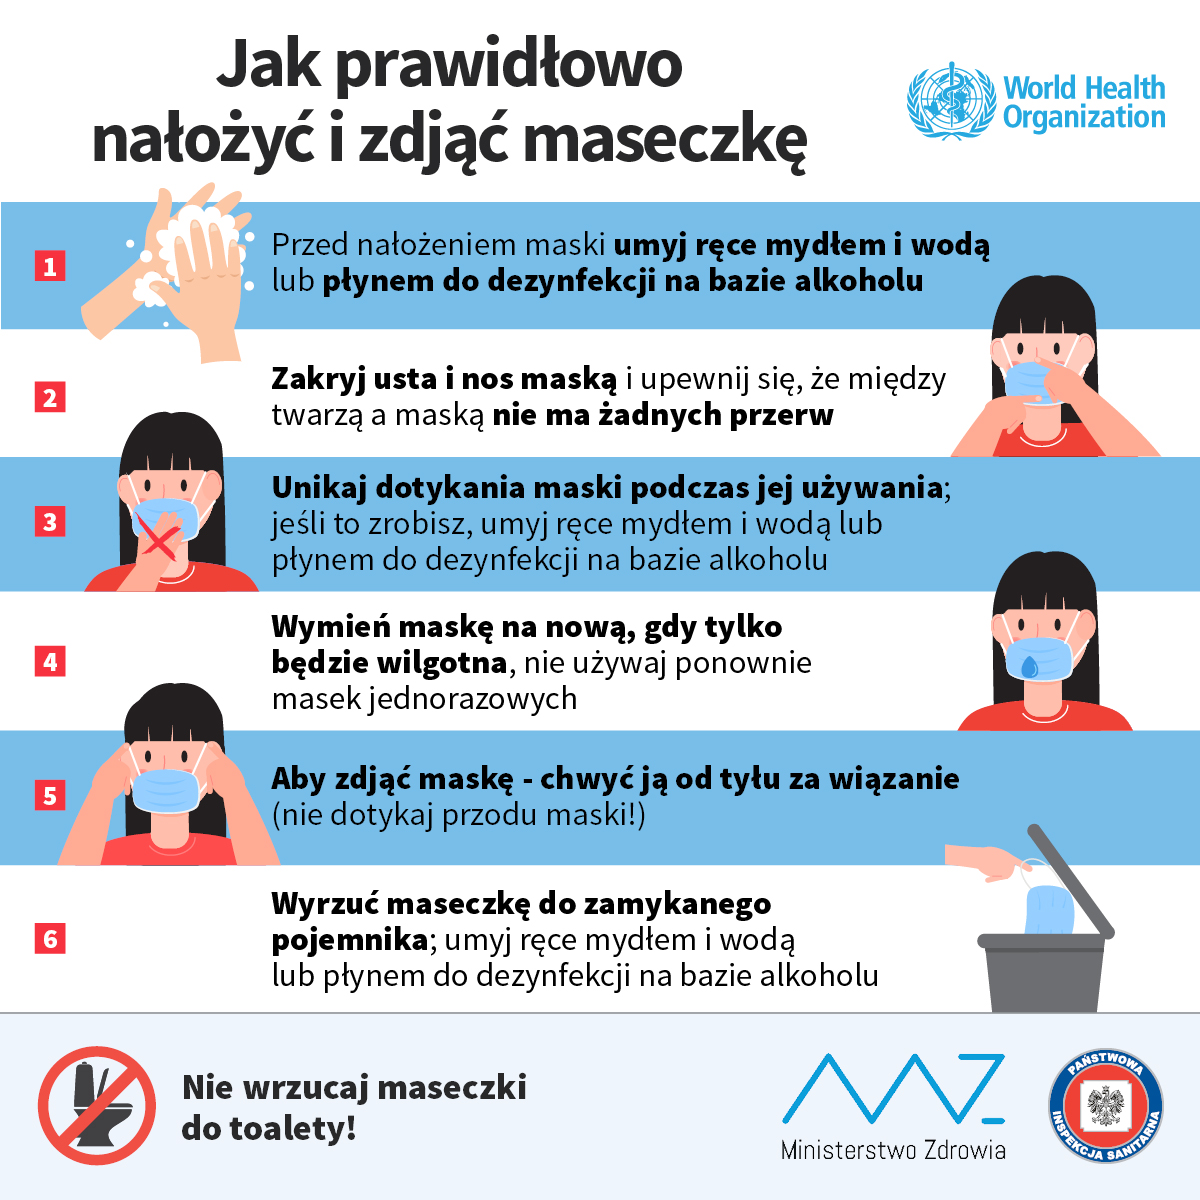 Jak prawidłowo nałożyć i zdjąć maseczkę? Źródło: www.szpitalepomorskie.eu